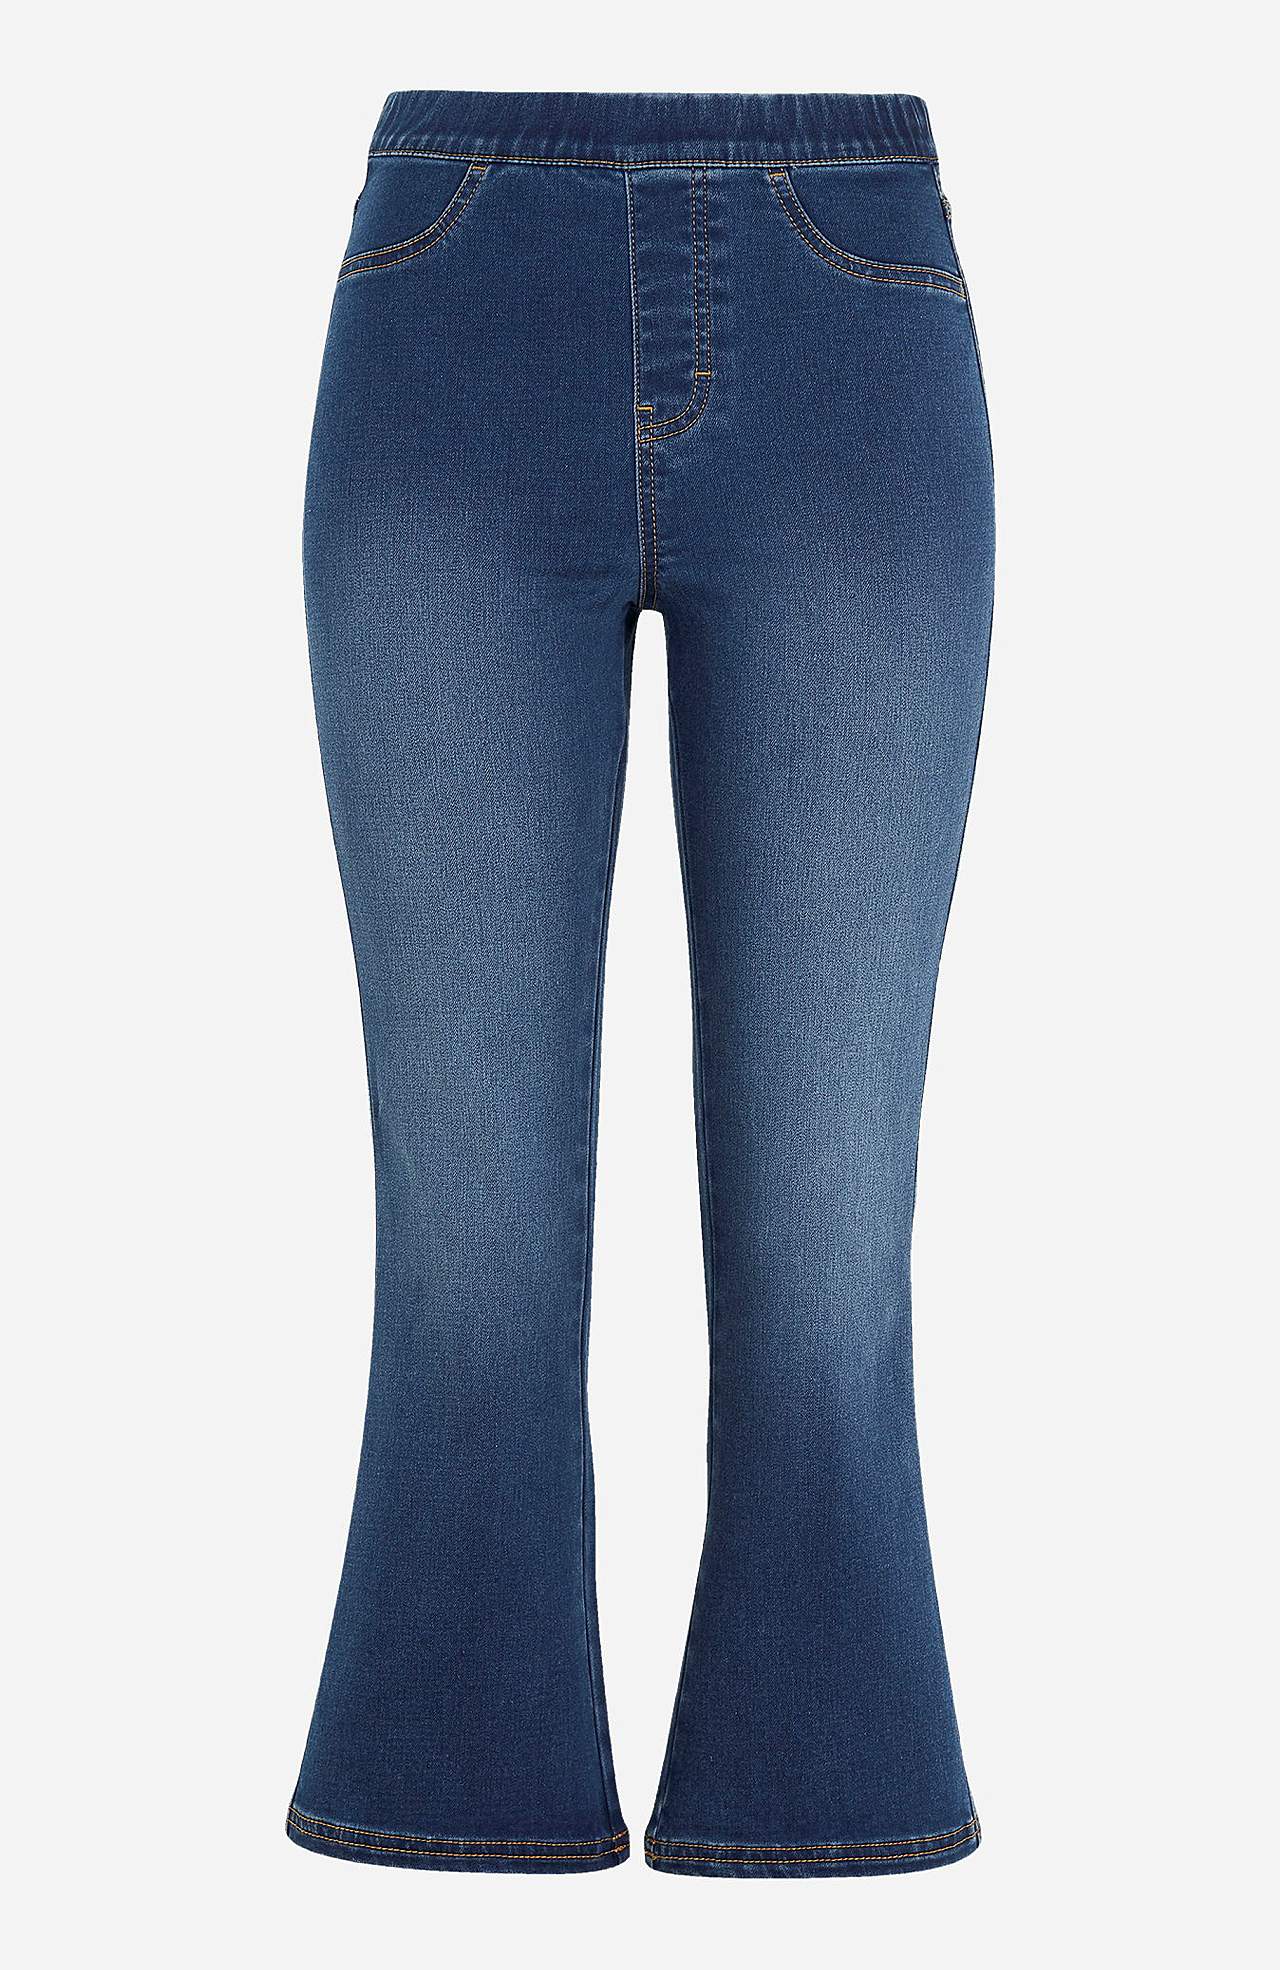 Kickflare jeans Olga